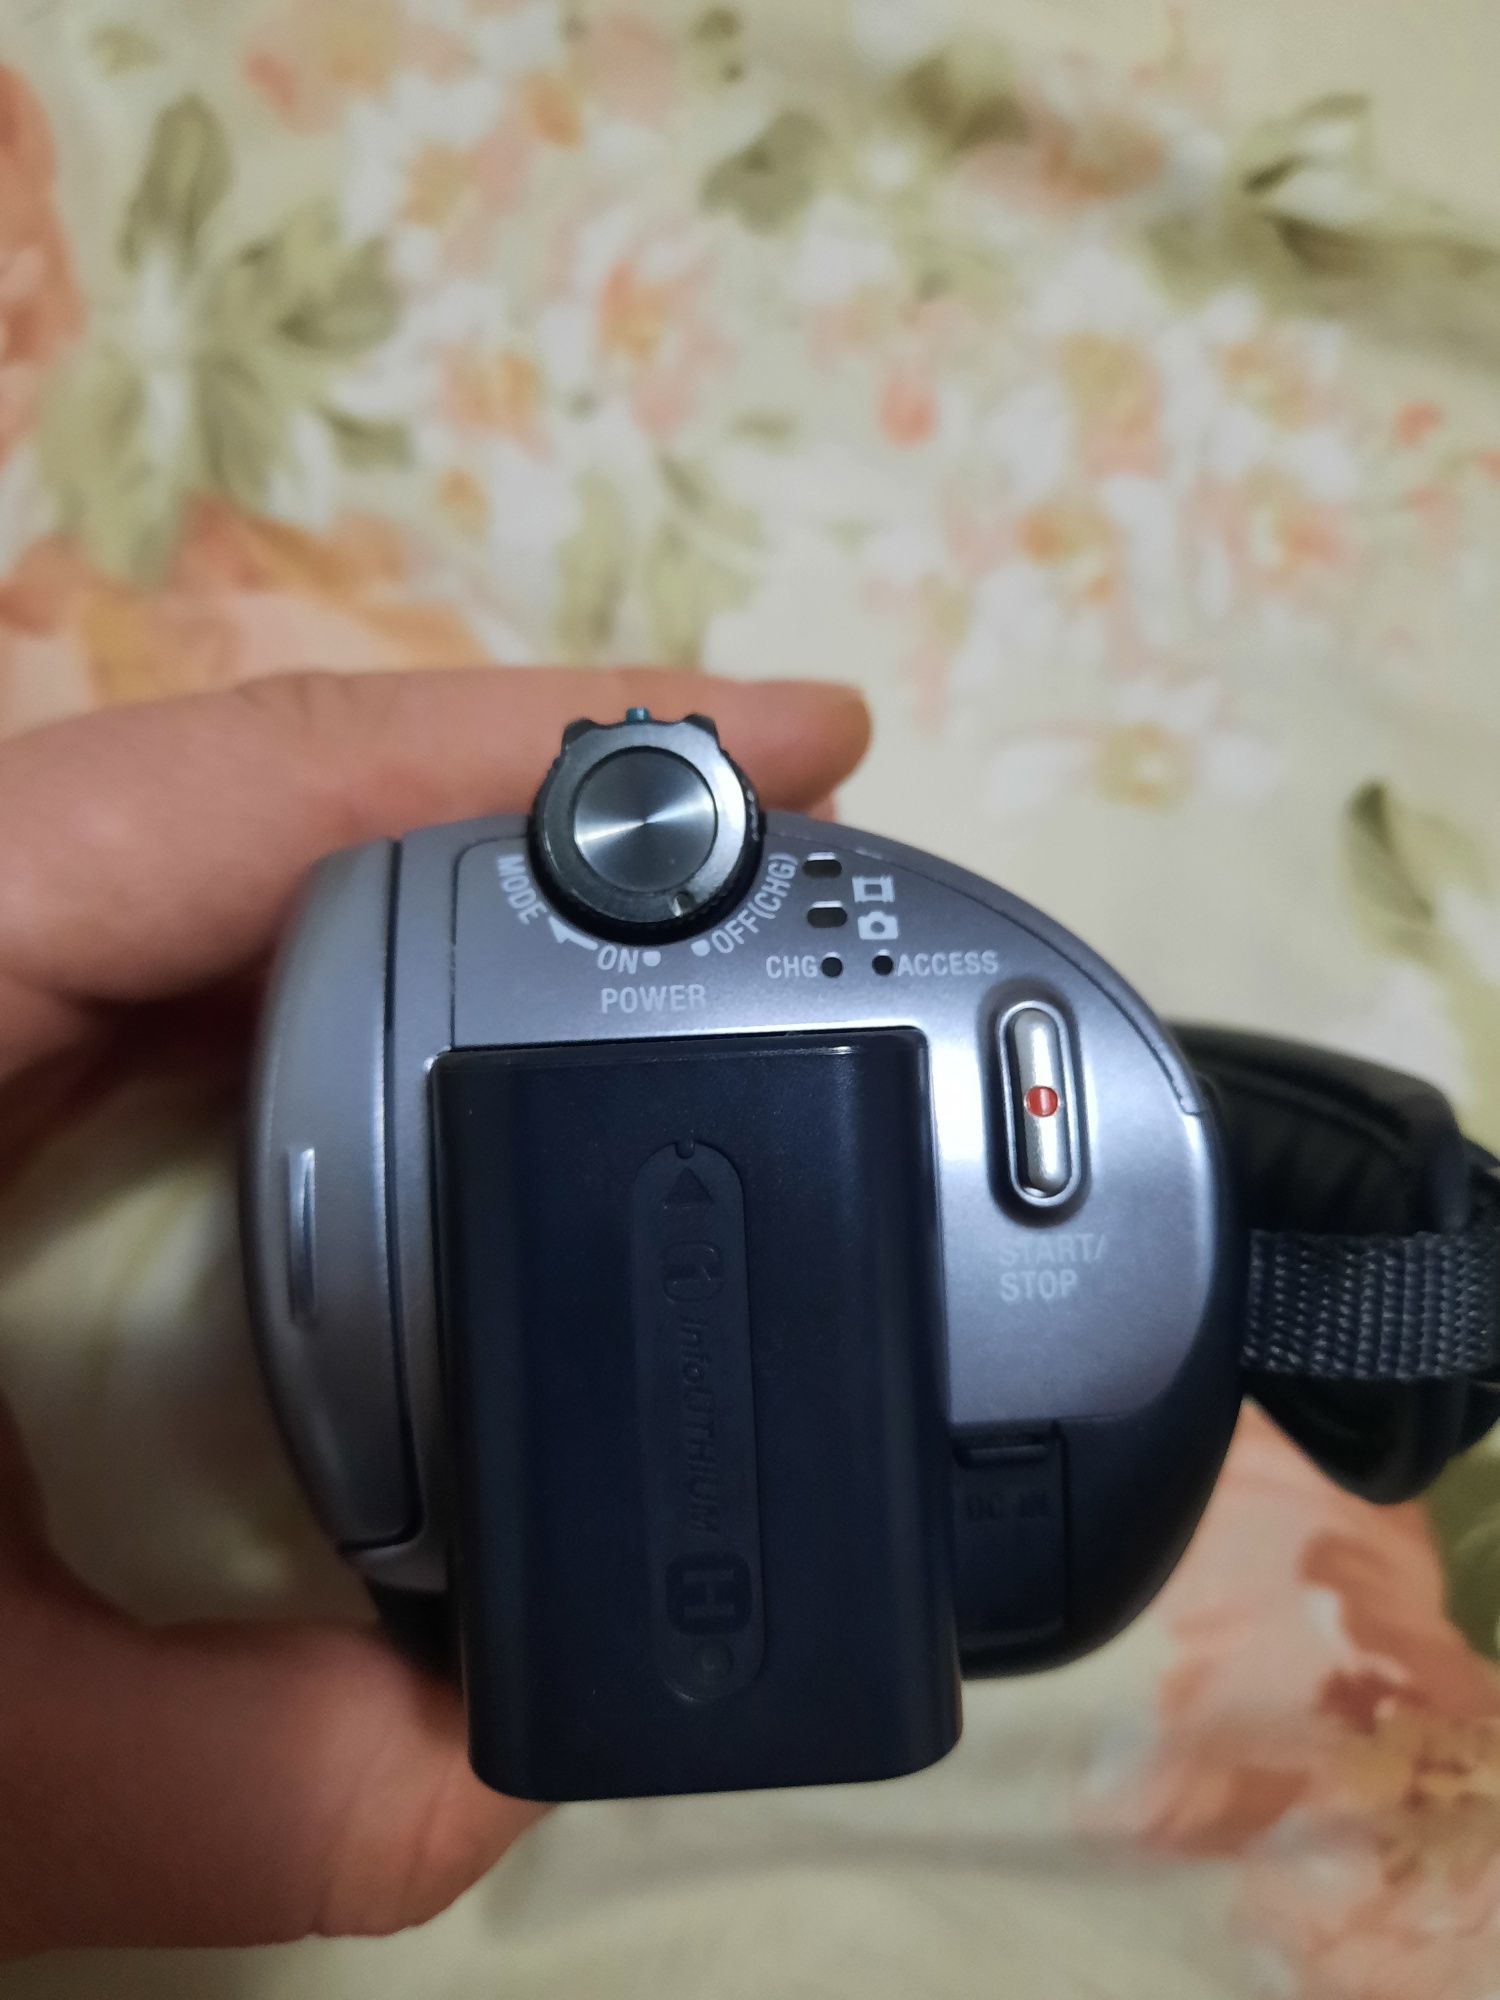 Sony handycam dcr-sr62